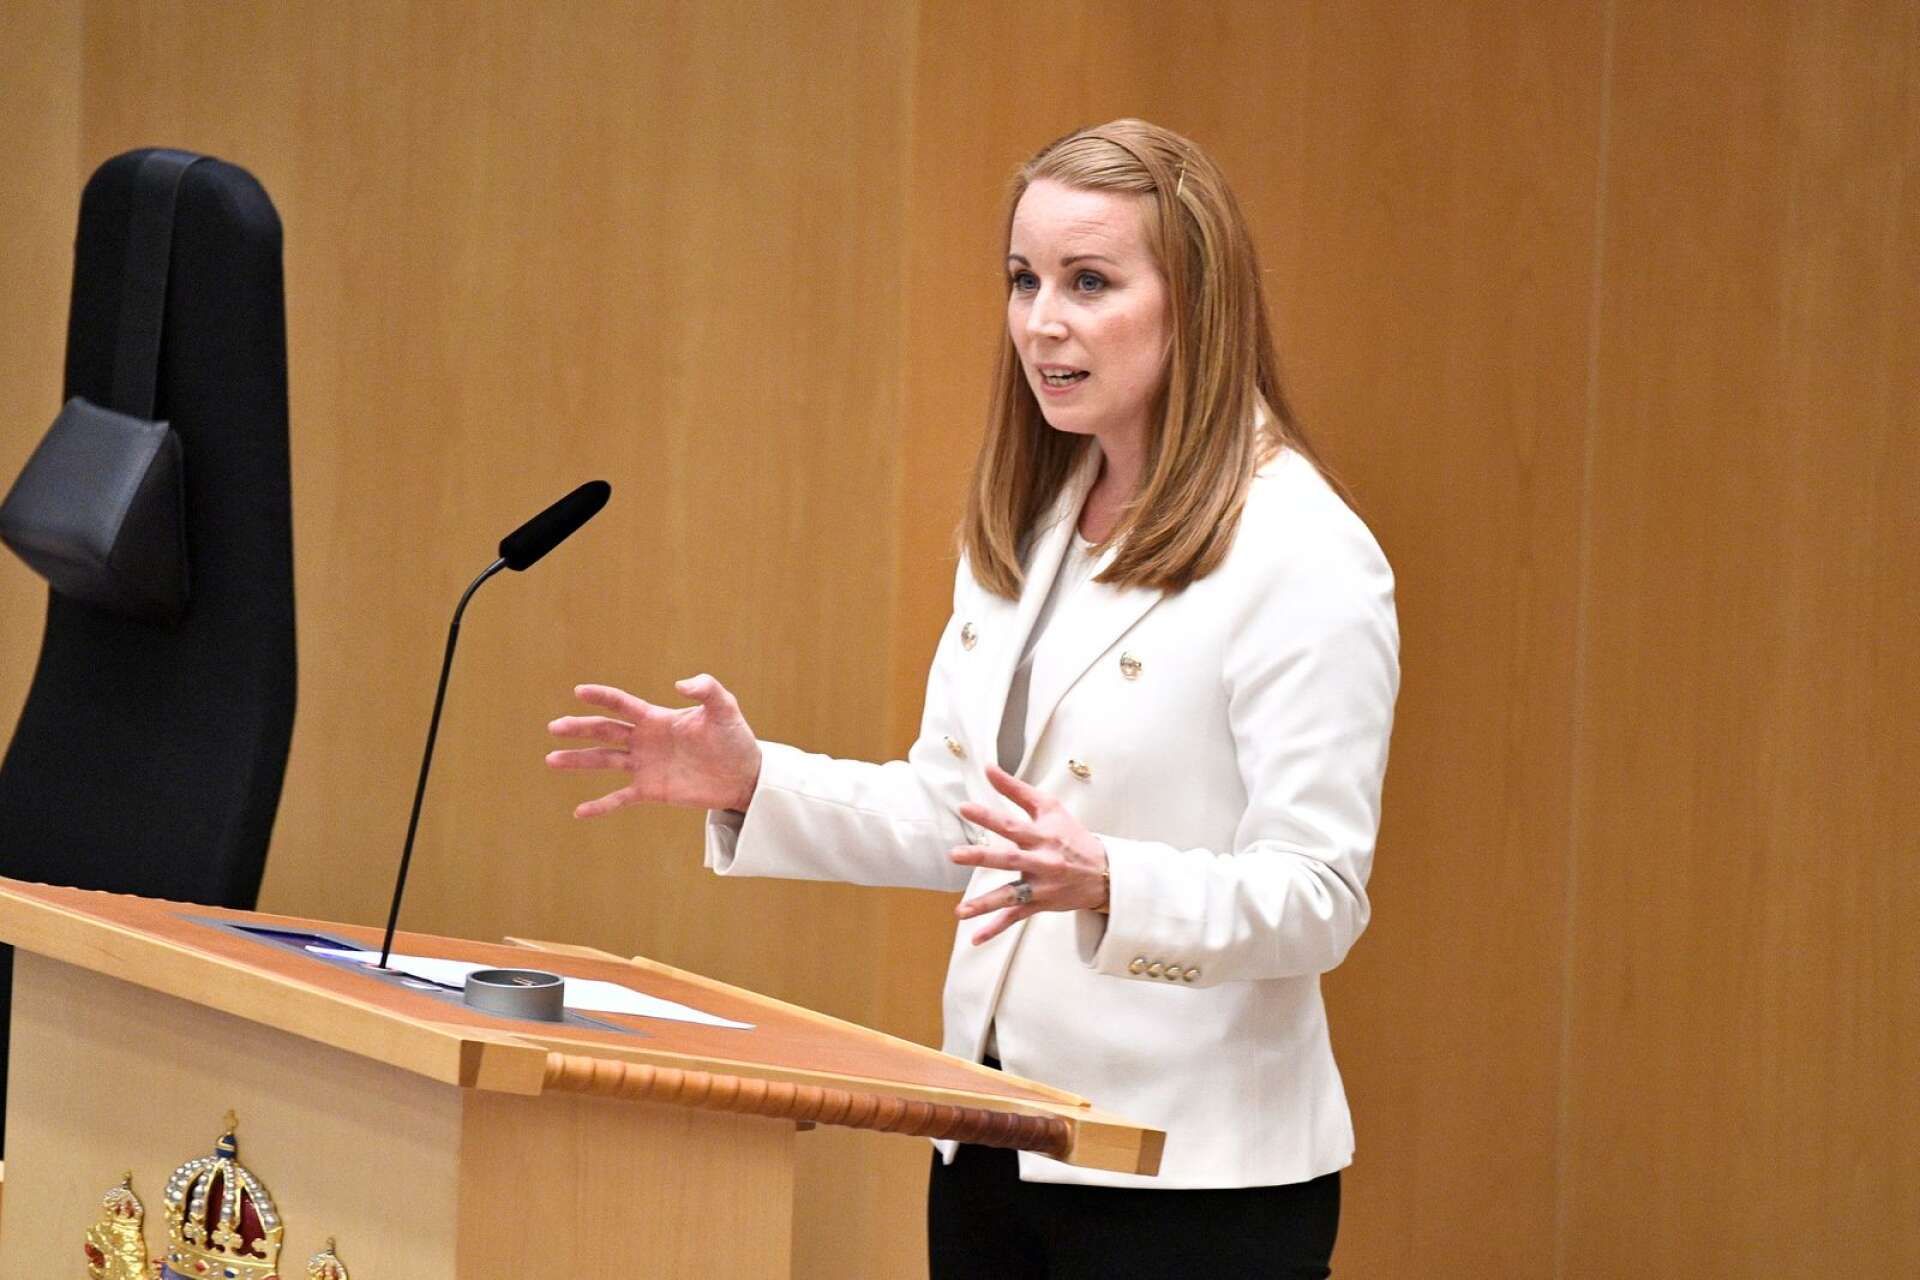 Centerpartiets partiledare Annie Lööf pressade statsminister Stefan Löfven i skattefrågan under partiledardebatten i riksdagen förra veckan.